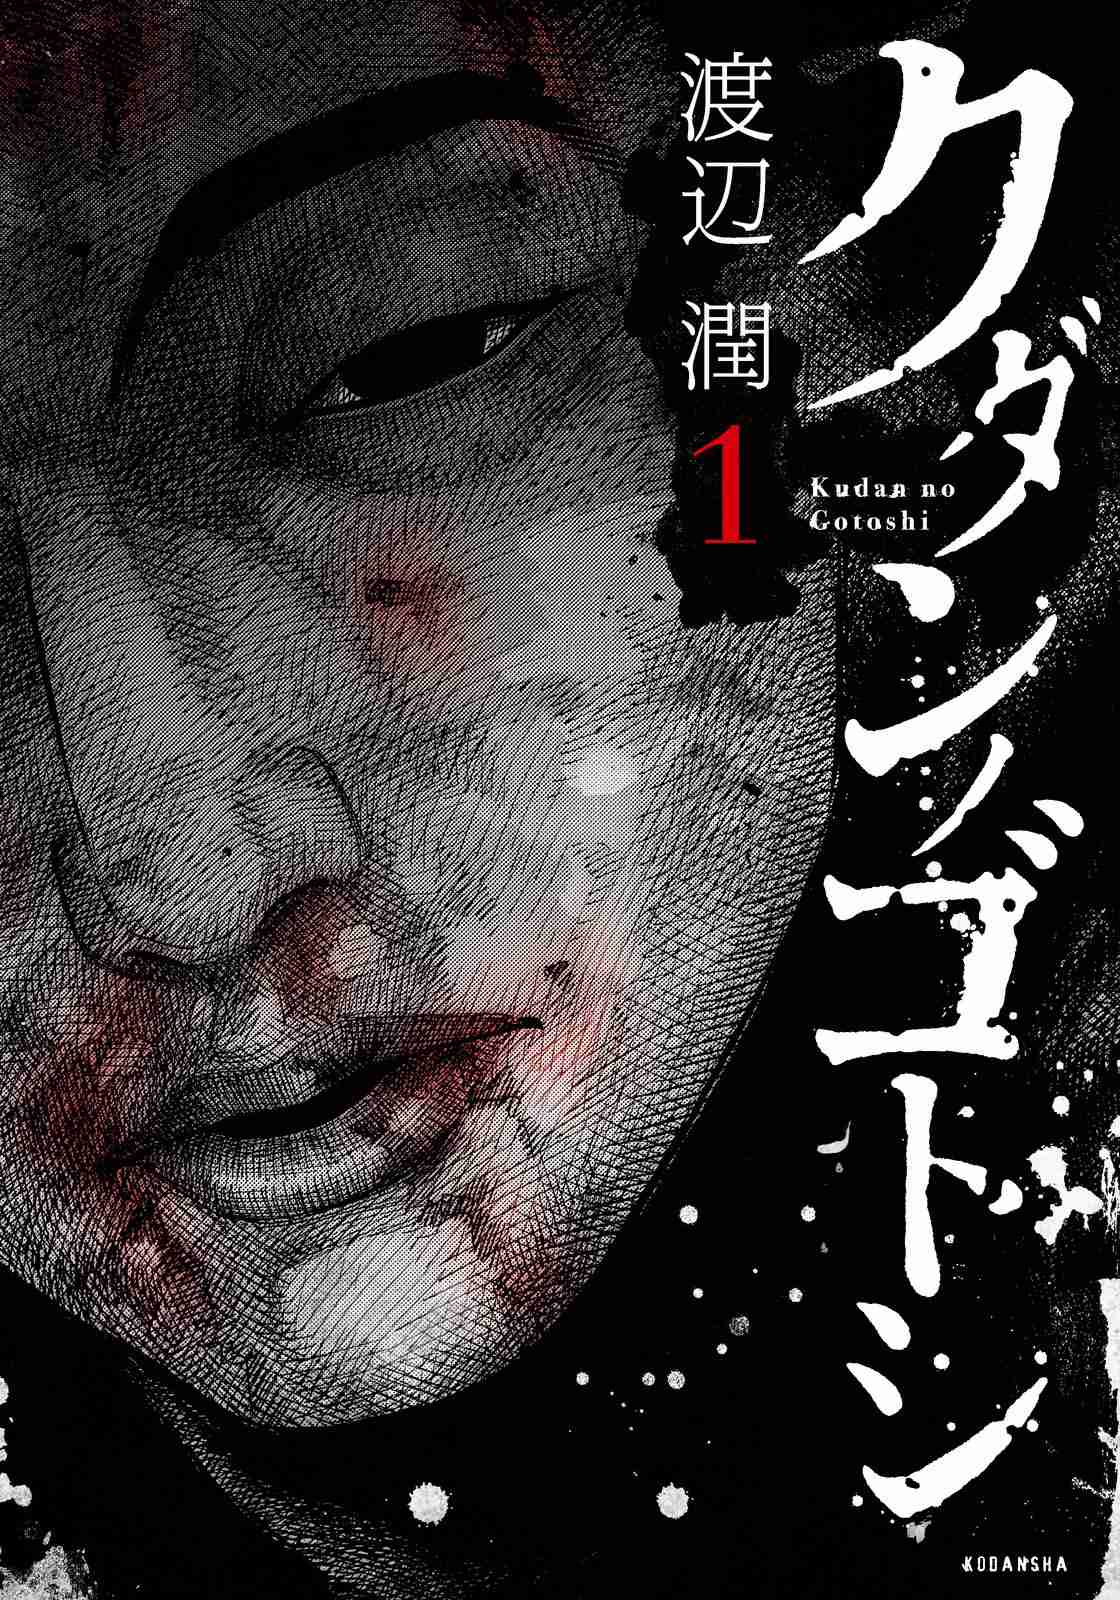 Kudan no Gotoshi Vol. 1 Ch. 6 Ayumi Baba < Part 3 >